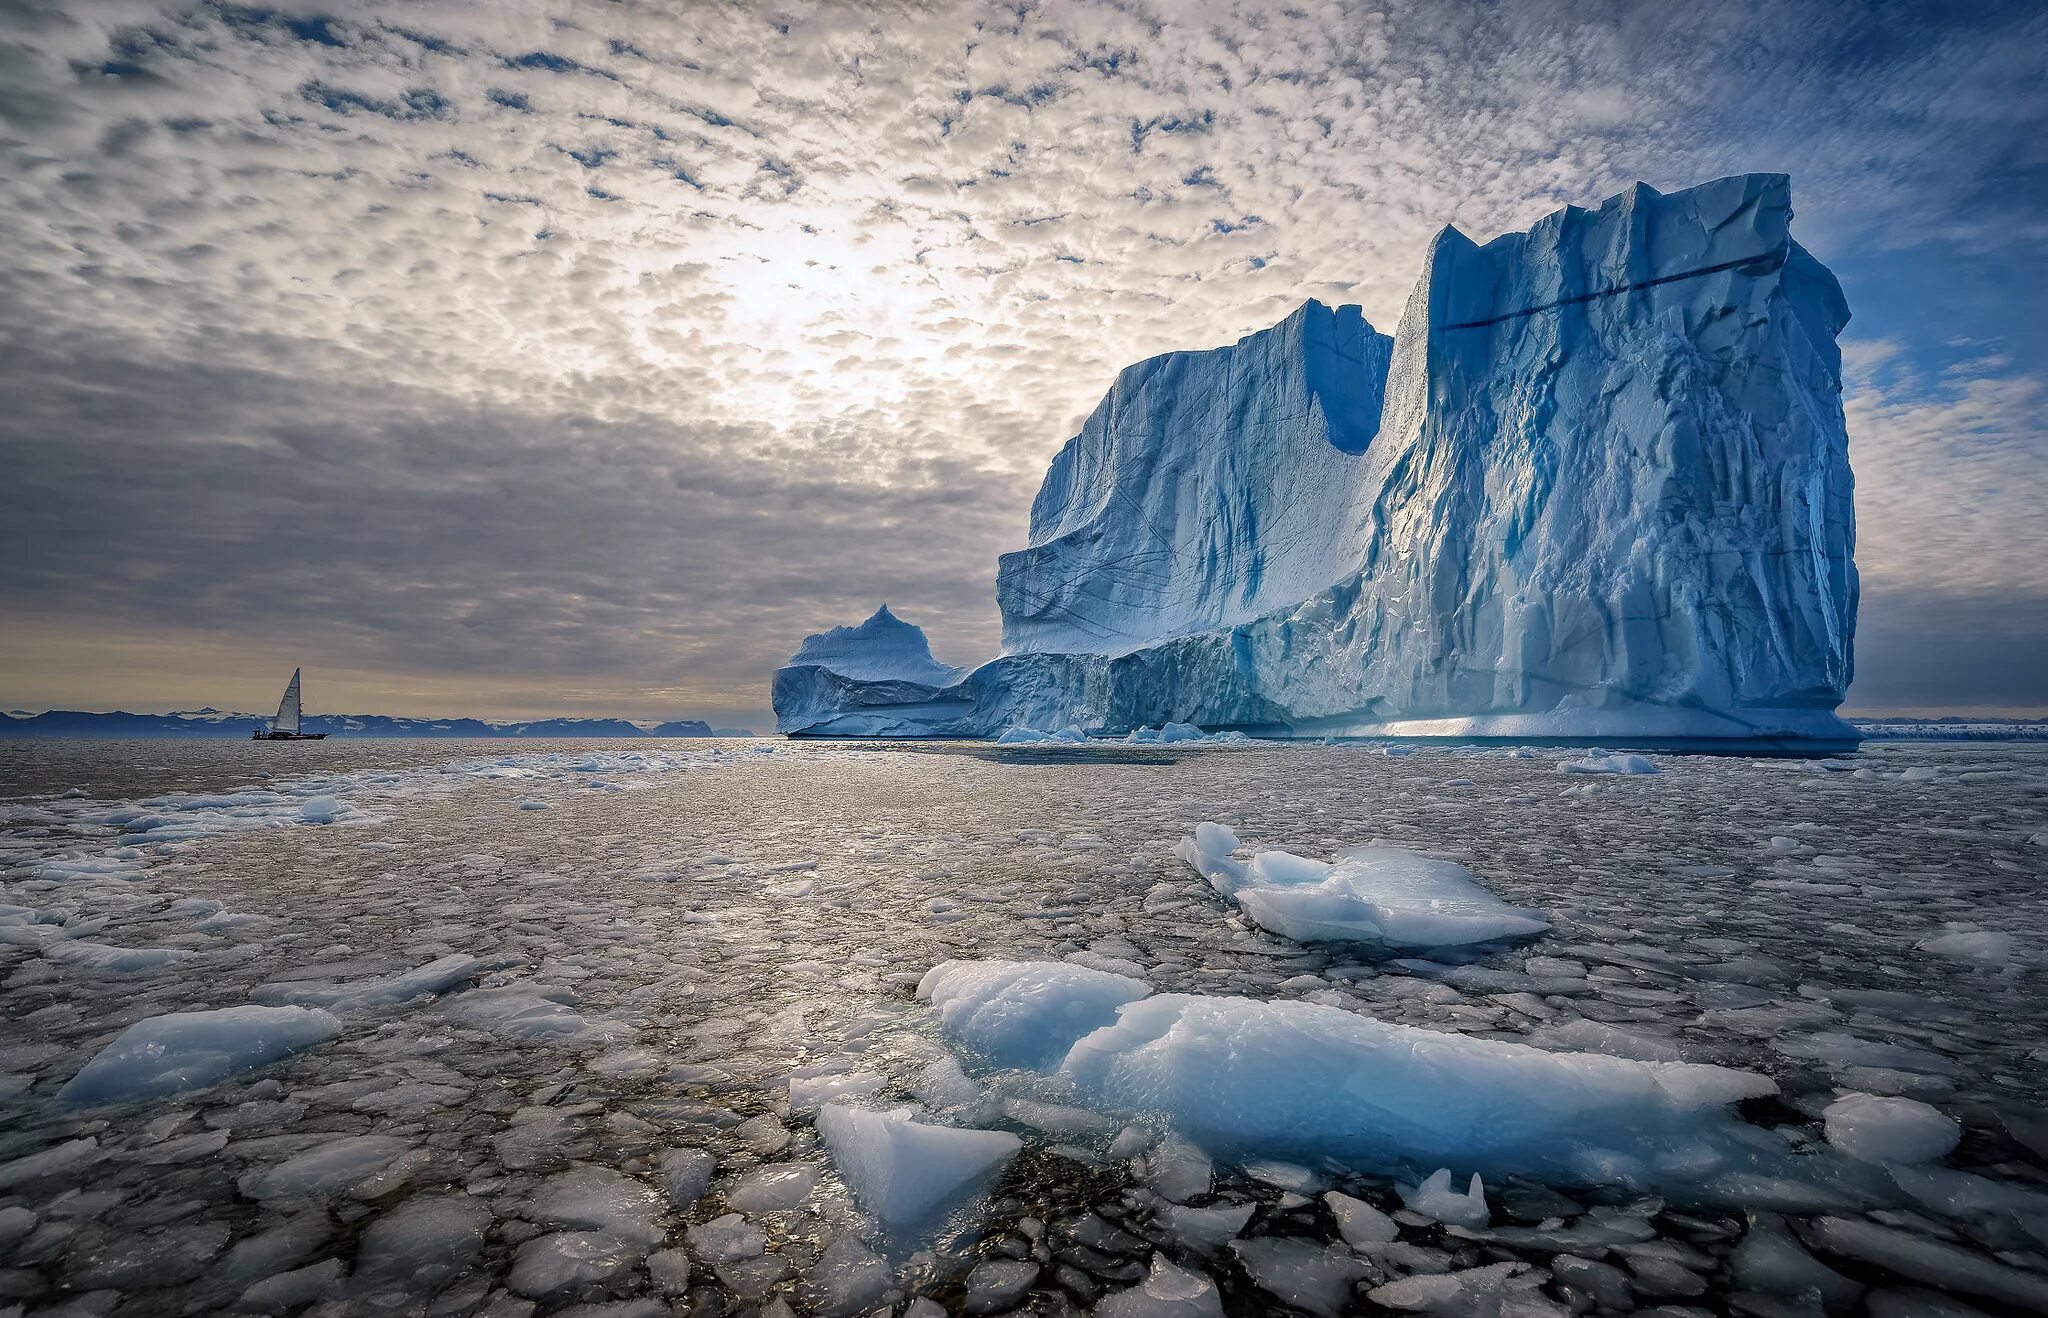 Арктика Северный Ледовитый океан. Антарктида Гренландия Арктика Северный Ледовитый океан. Гренландия Северный Ледовитый океан. Ледовитый океан Айсберг. Северный ледяной океан